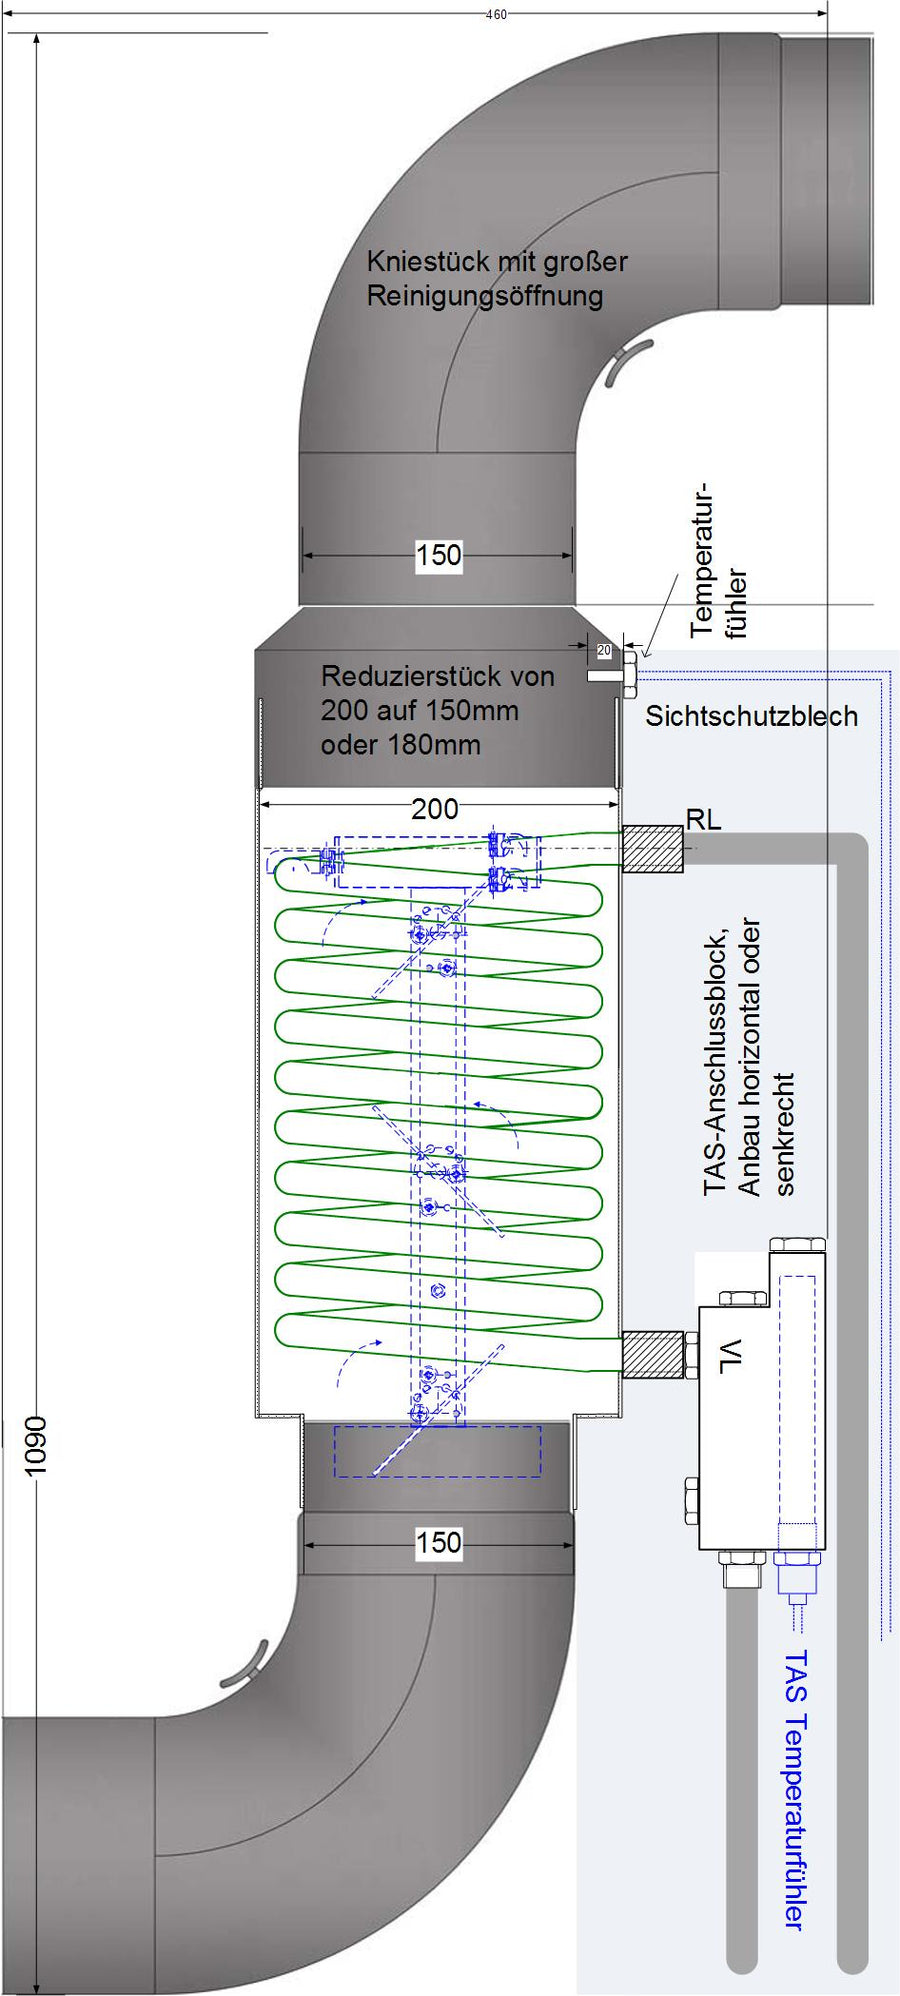 [:de]TurbuFlex-Set Wärmetauscher Energieumleitung zur Wassererwärmung[:en]TURBUFLEX SET - HEAT EXCHANGER - WATER MODULE[:nl]TURBUFLEX SET - WARMTEWISSELAAR – WATER MODULE[:fr]TurbuFlex-Set Wärmetauscher Energieumleitung zur Wassererwärmung[:]